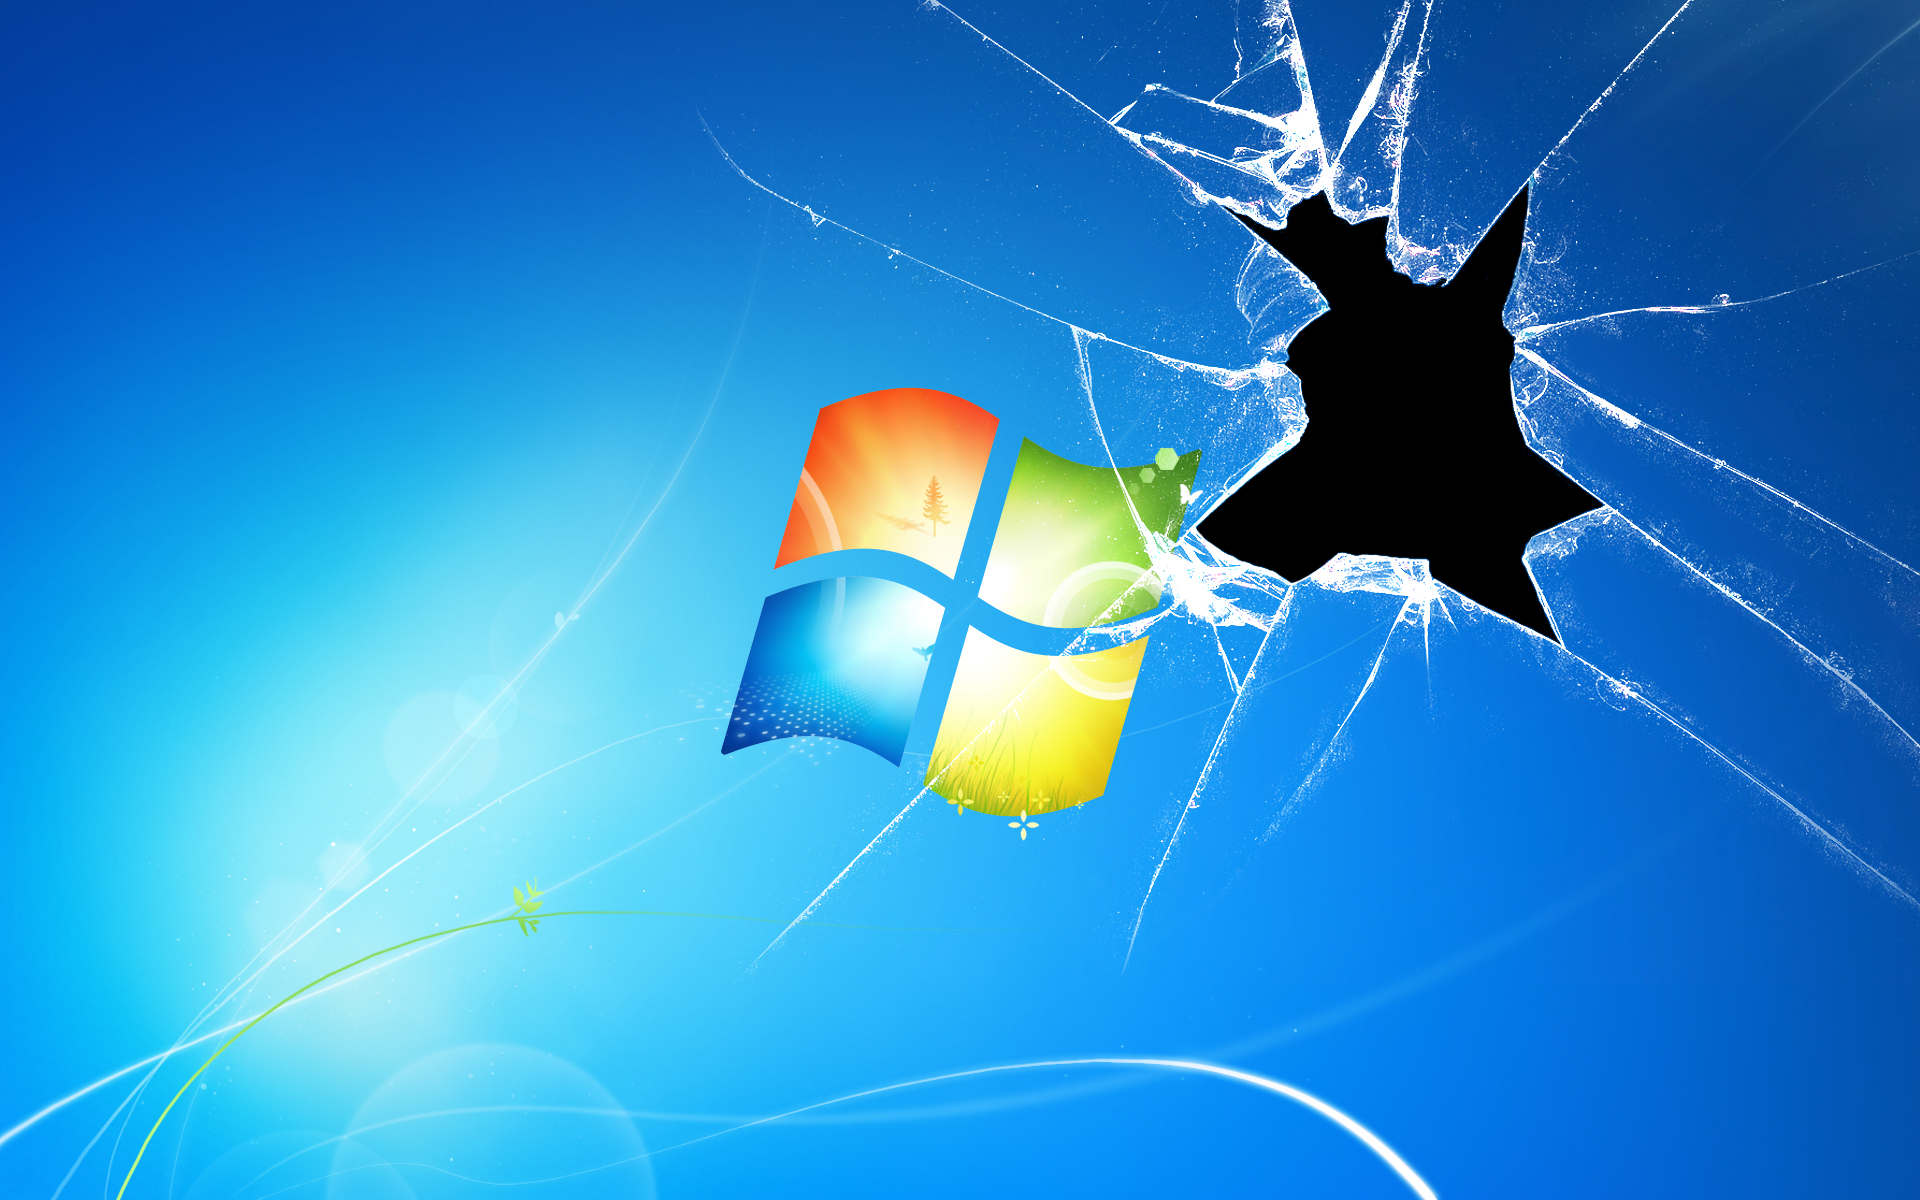 Scratch 2 Download For Mac Broken Not Working